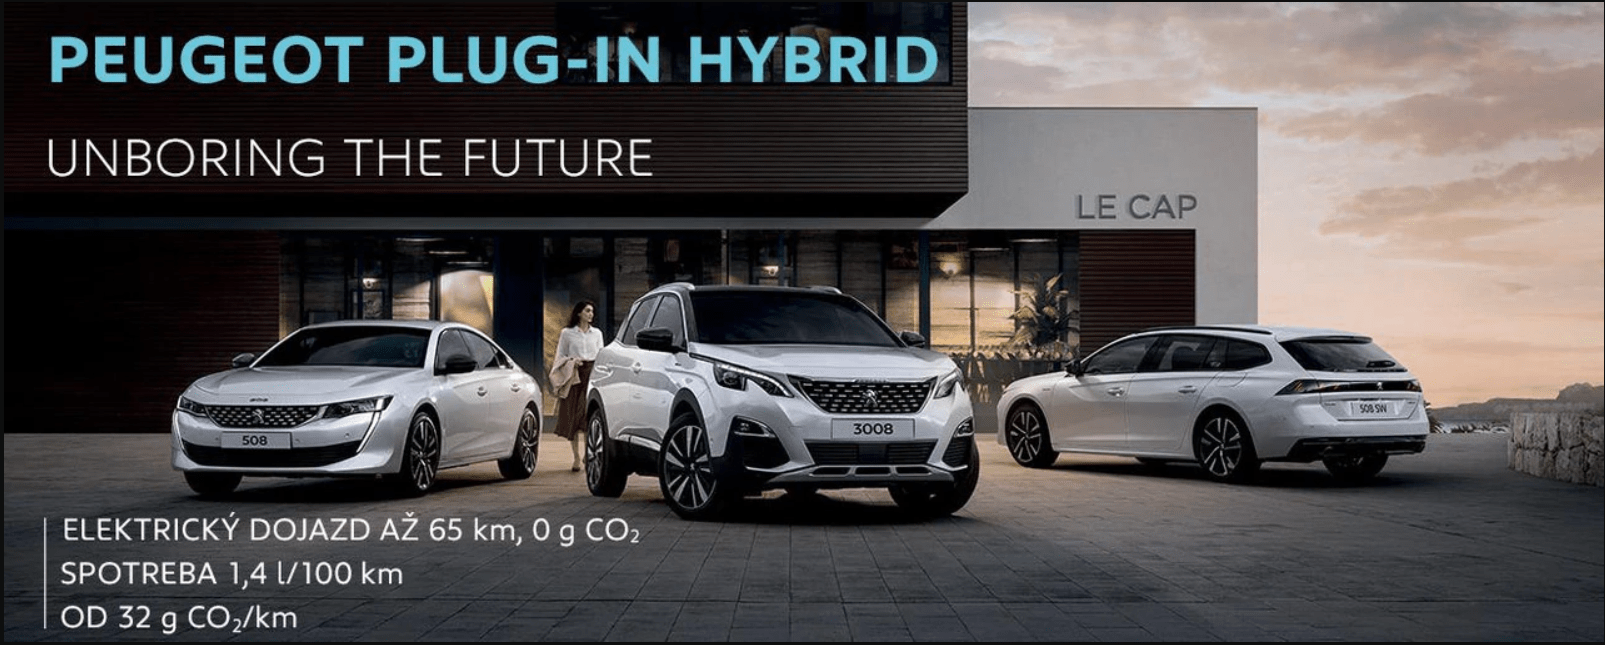 Peugeot_plug-in_hybrid